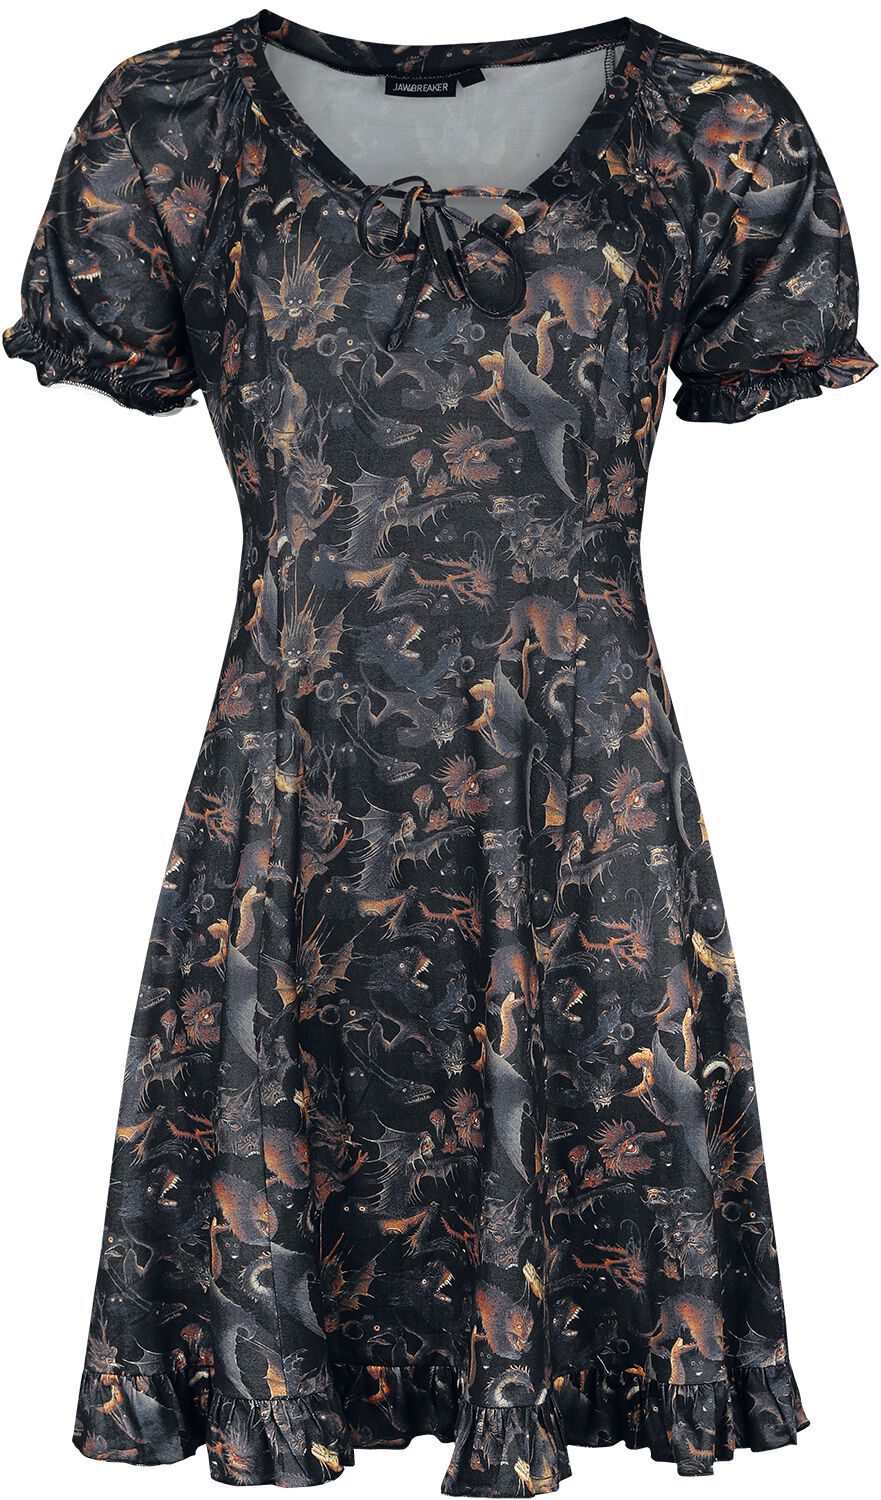 Jawbreaker - Gothic Kurzes Kleid - Paradise Lost Dress - XS bis 4XL - für Damen - Größe M - multicolor